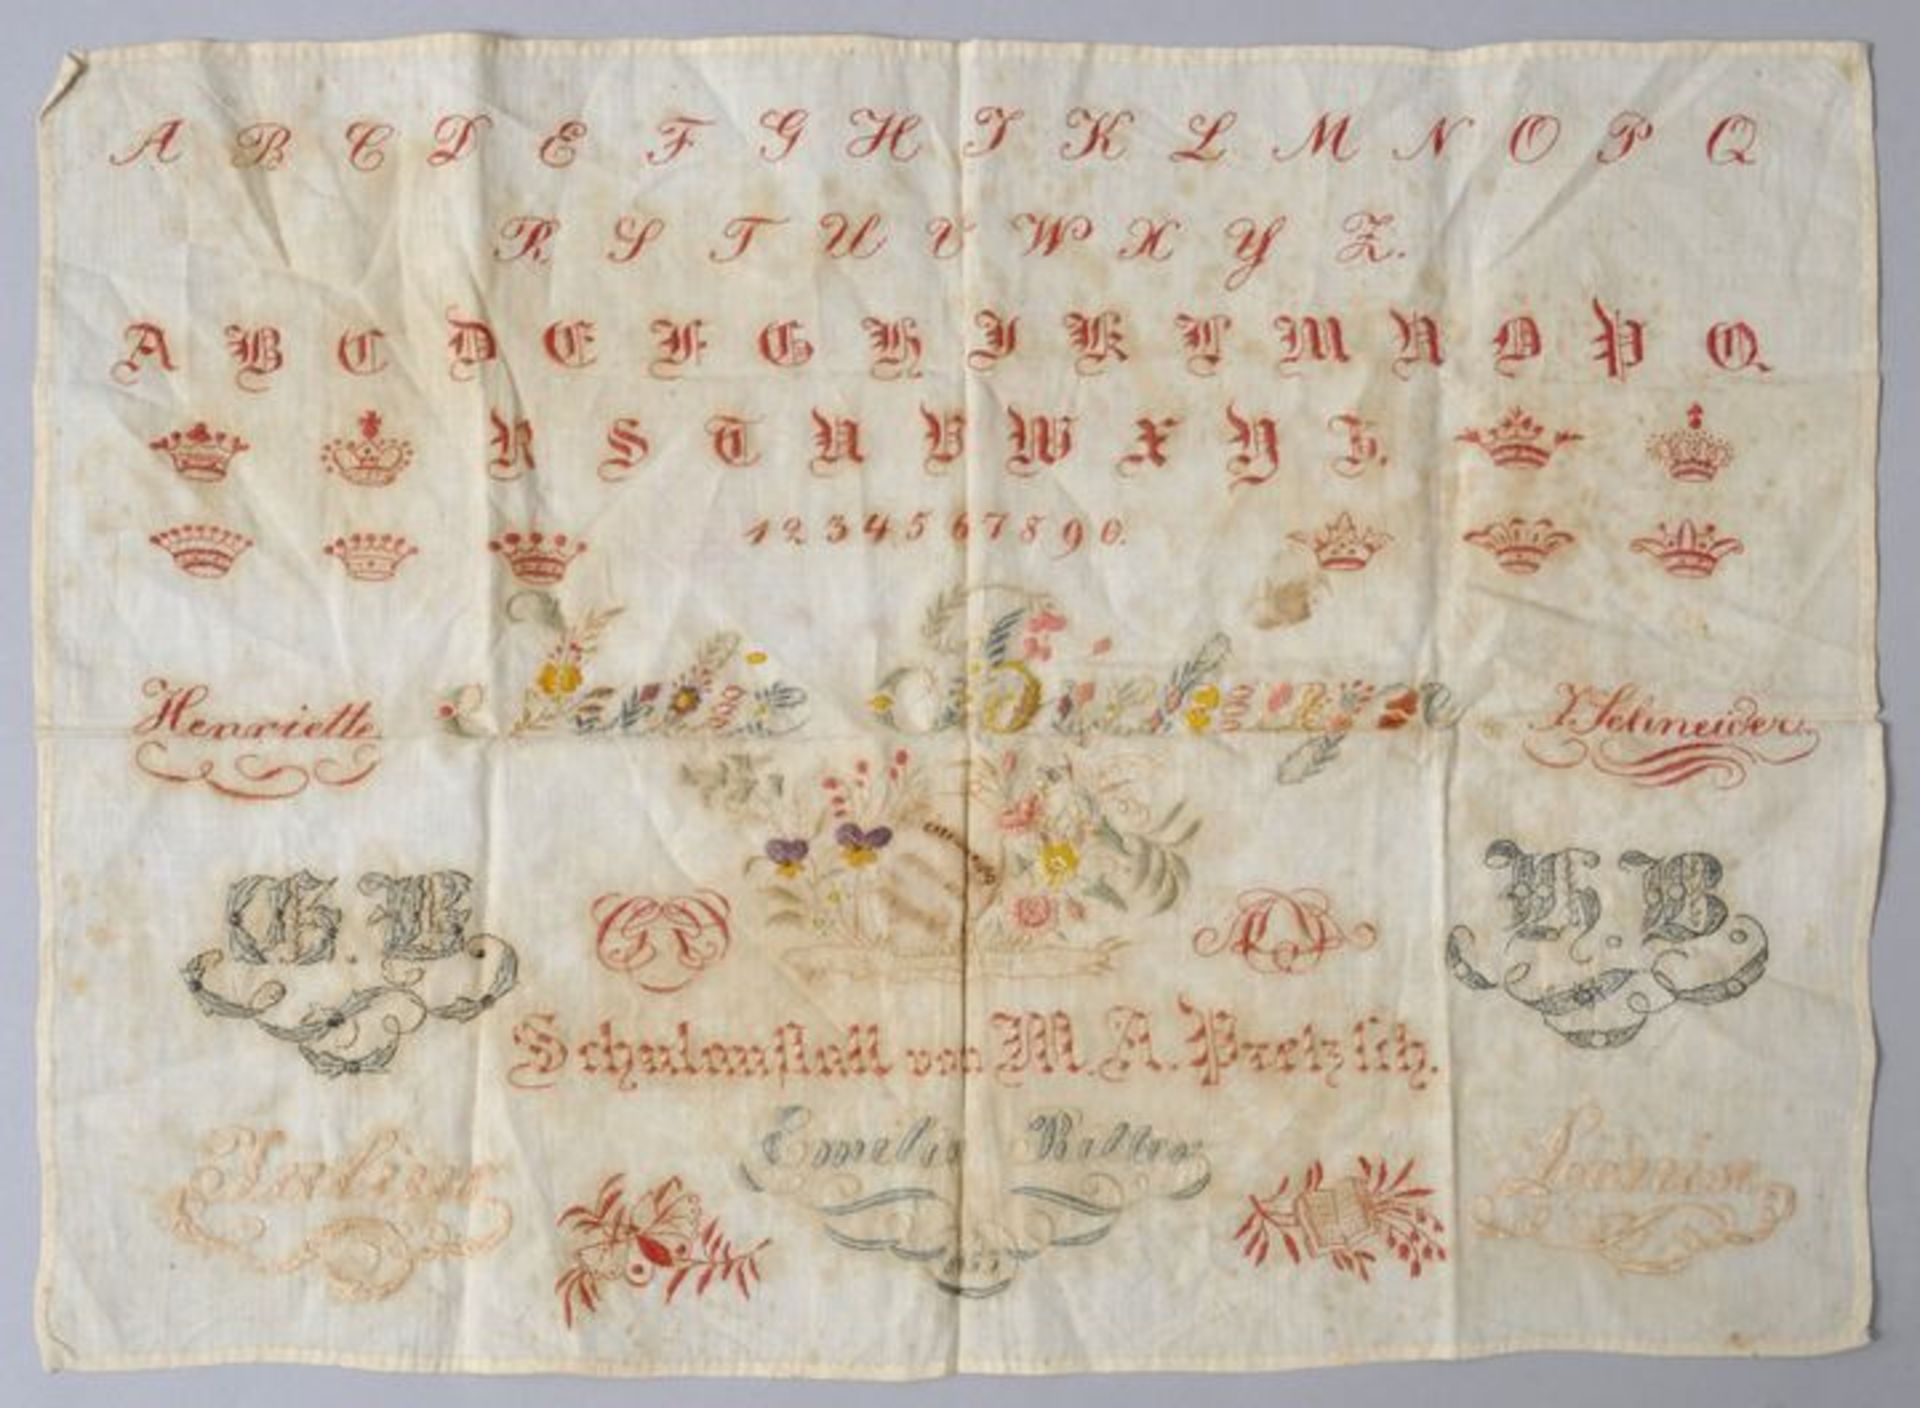 Stickmustertuch, Deutschland, dat. 1853Plattstich-Stickerei auf Baumwolle. Alphabet, Zahlen, Kronen,